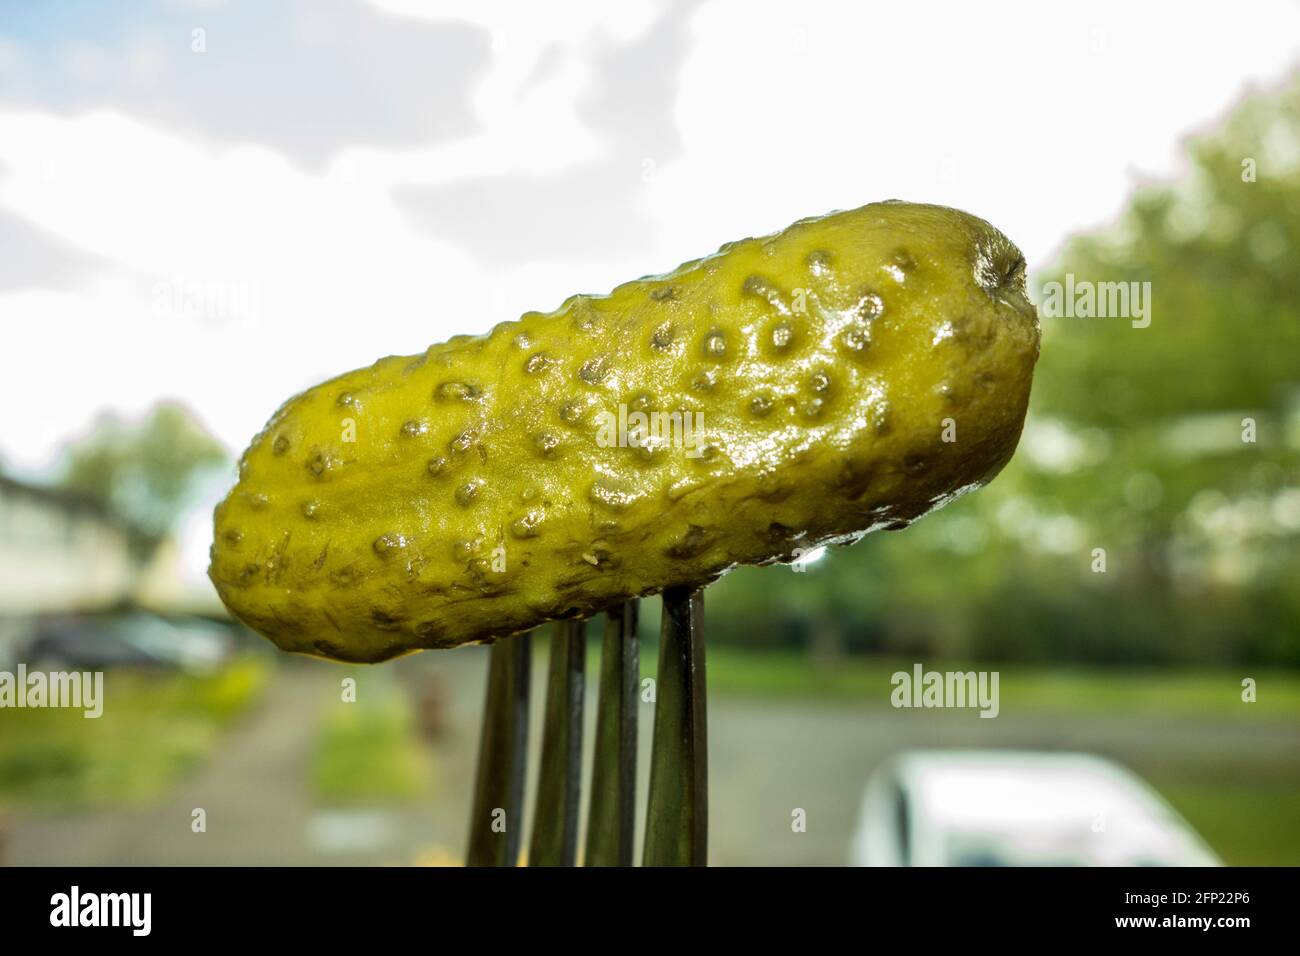 Pickled gherkin sur une fourchette Banque D'Images